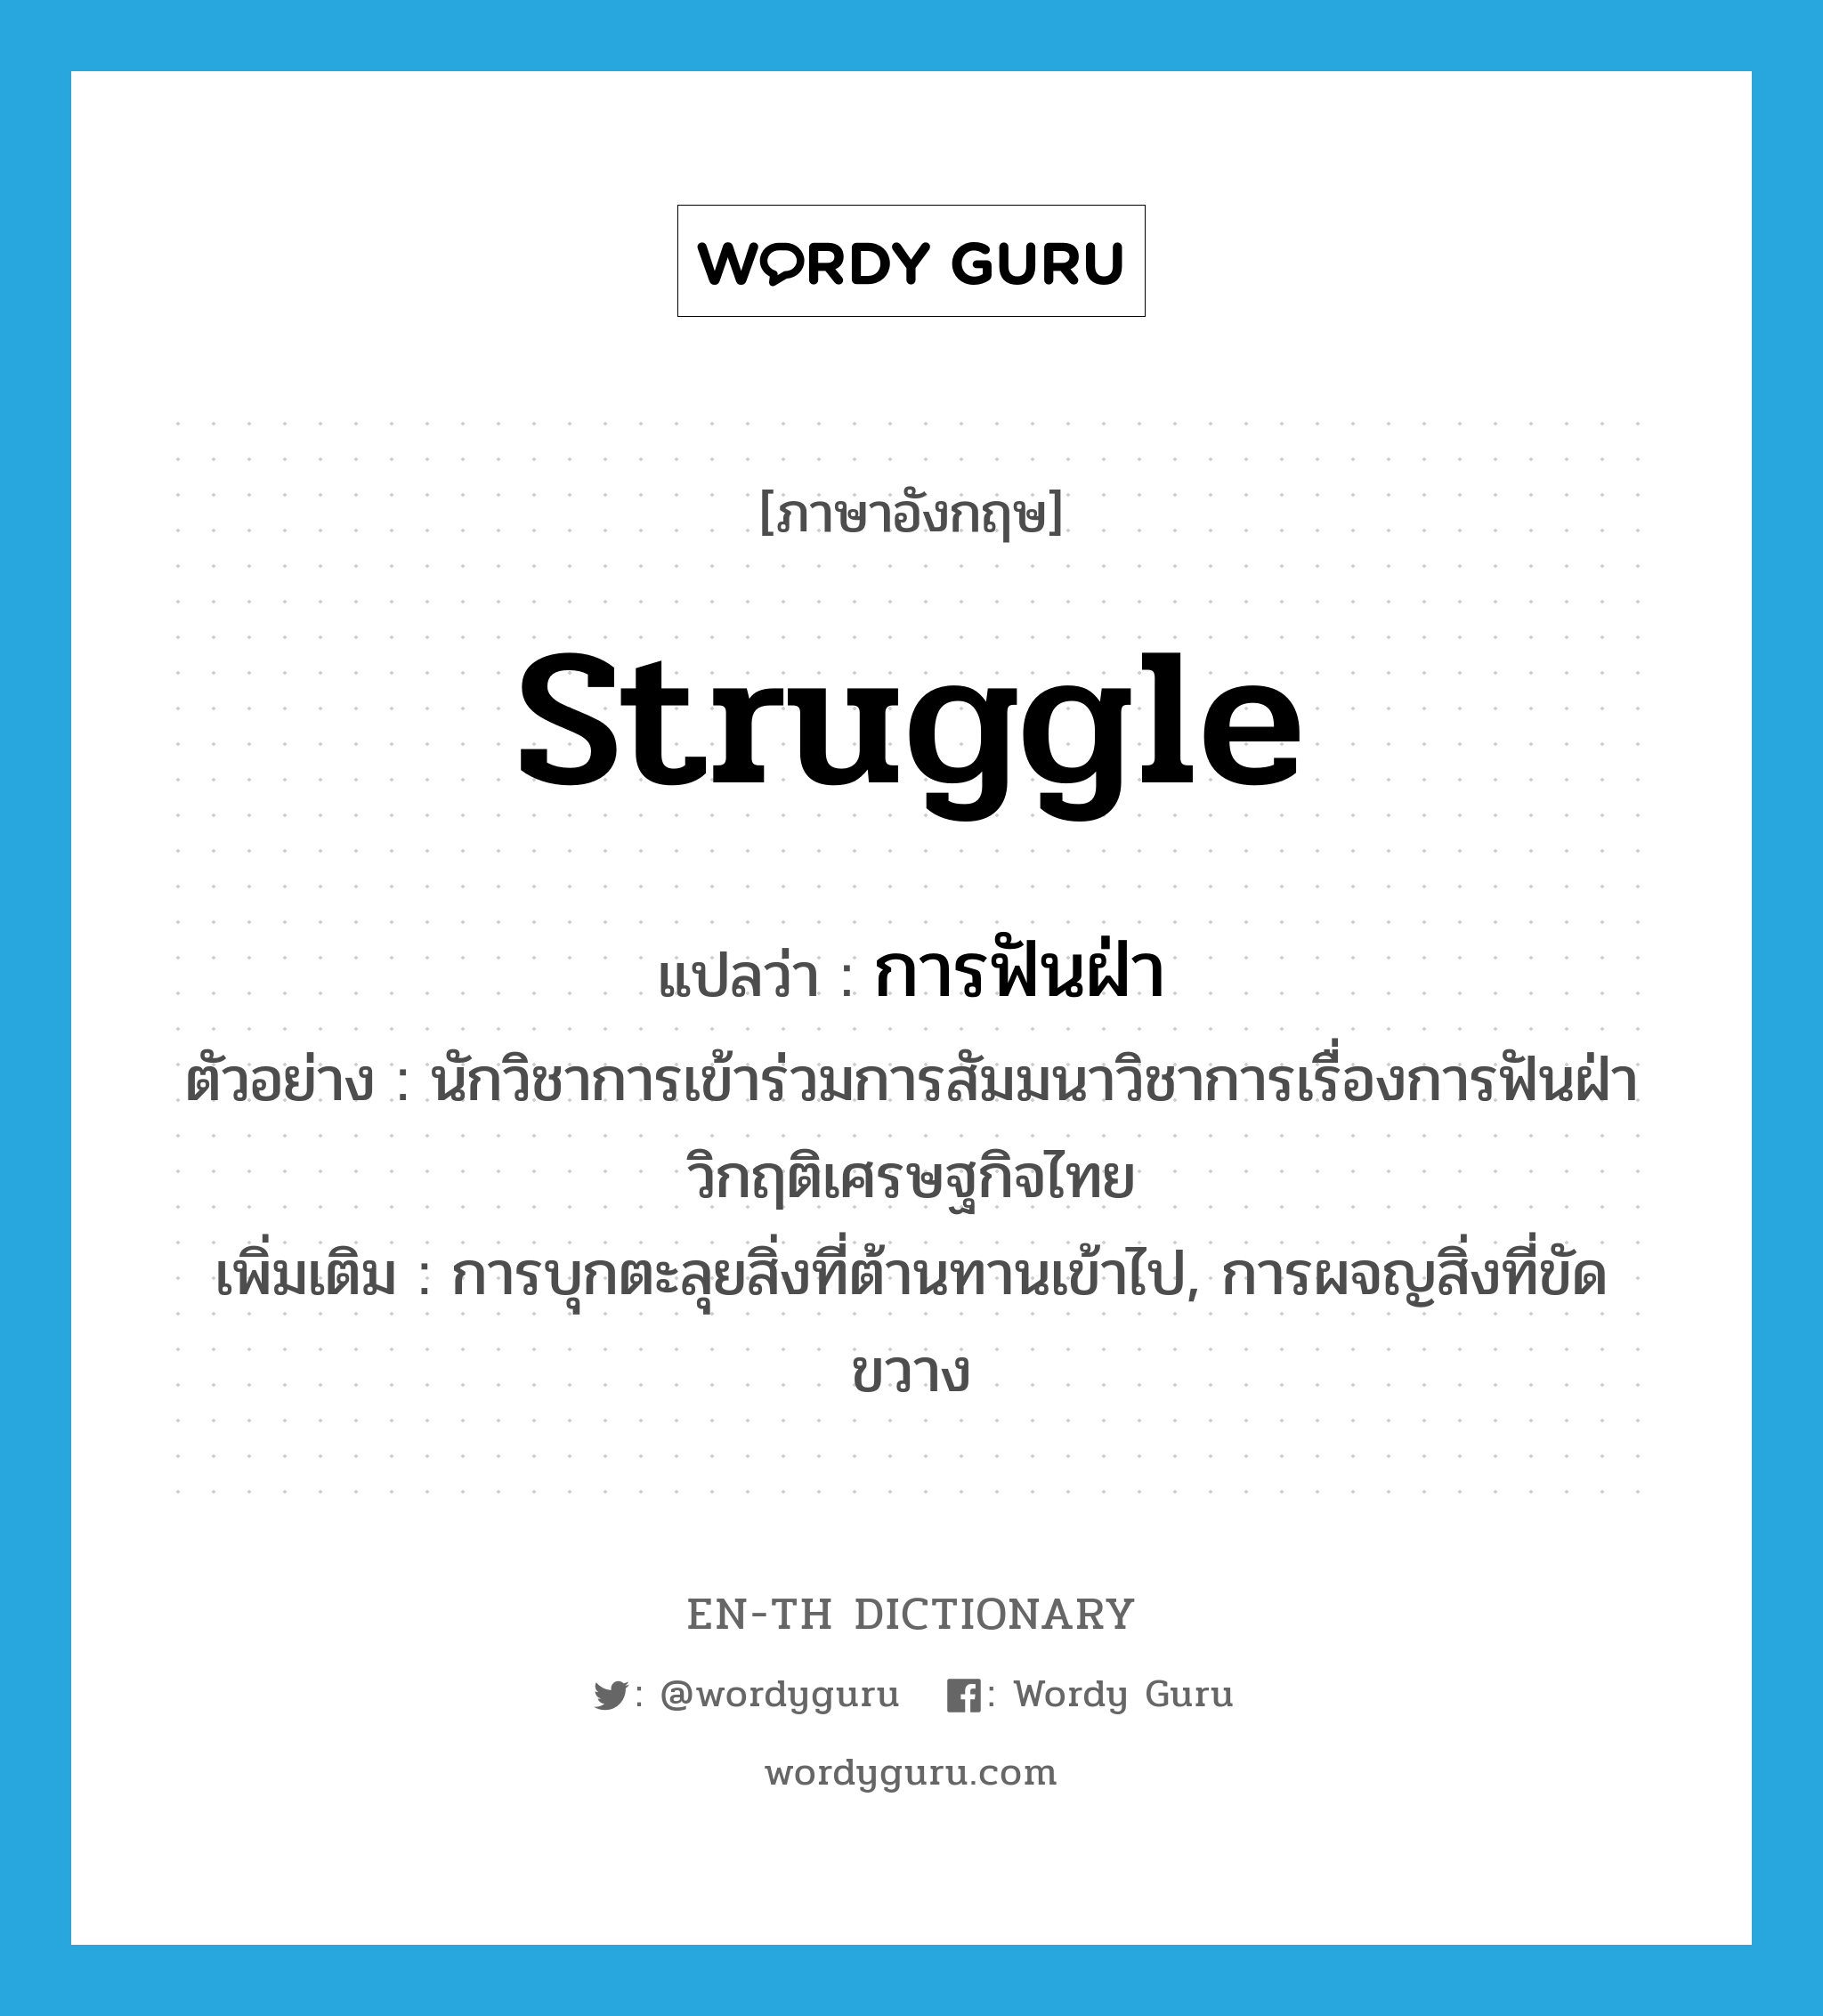 struggle แปลว่า?, คำศัพท์ภาษาอังกฤษ struggle แปลว่า การฟันฝ่า ประเภท N ตัวอย่าง นักวิชาการเข้าร่วมการสัมมนาวิชาการเรื่องการฟันฝ่าวิกฤติเศรษฐกิจไทย เพิ่มเติม การบุกตะลุยสิ่งที่ต้านทานเข้าไป, การผจญสิ่งที่ขัดขวาง หมวด N